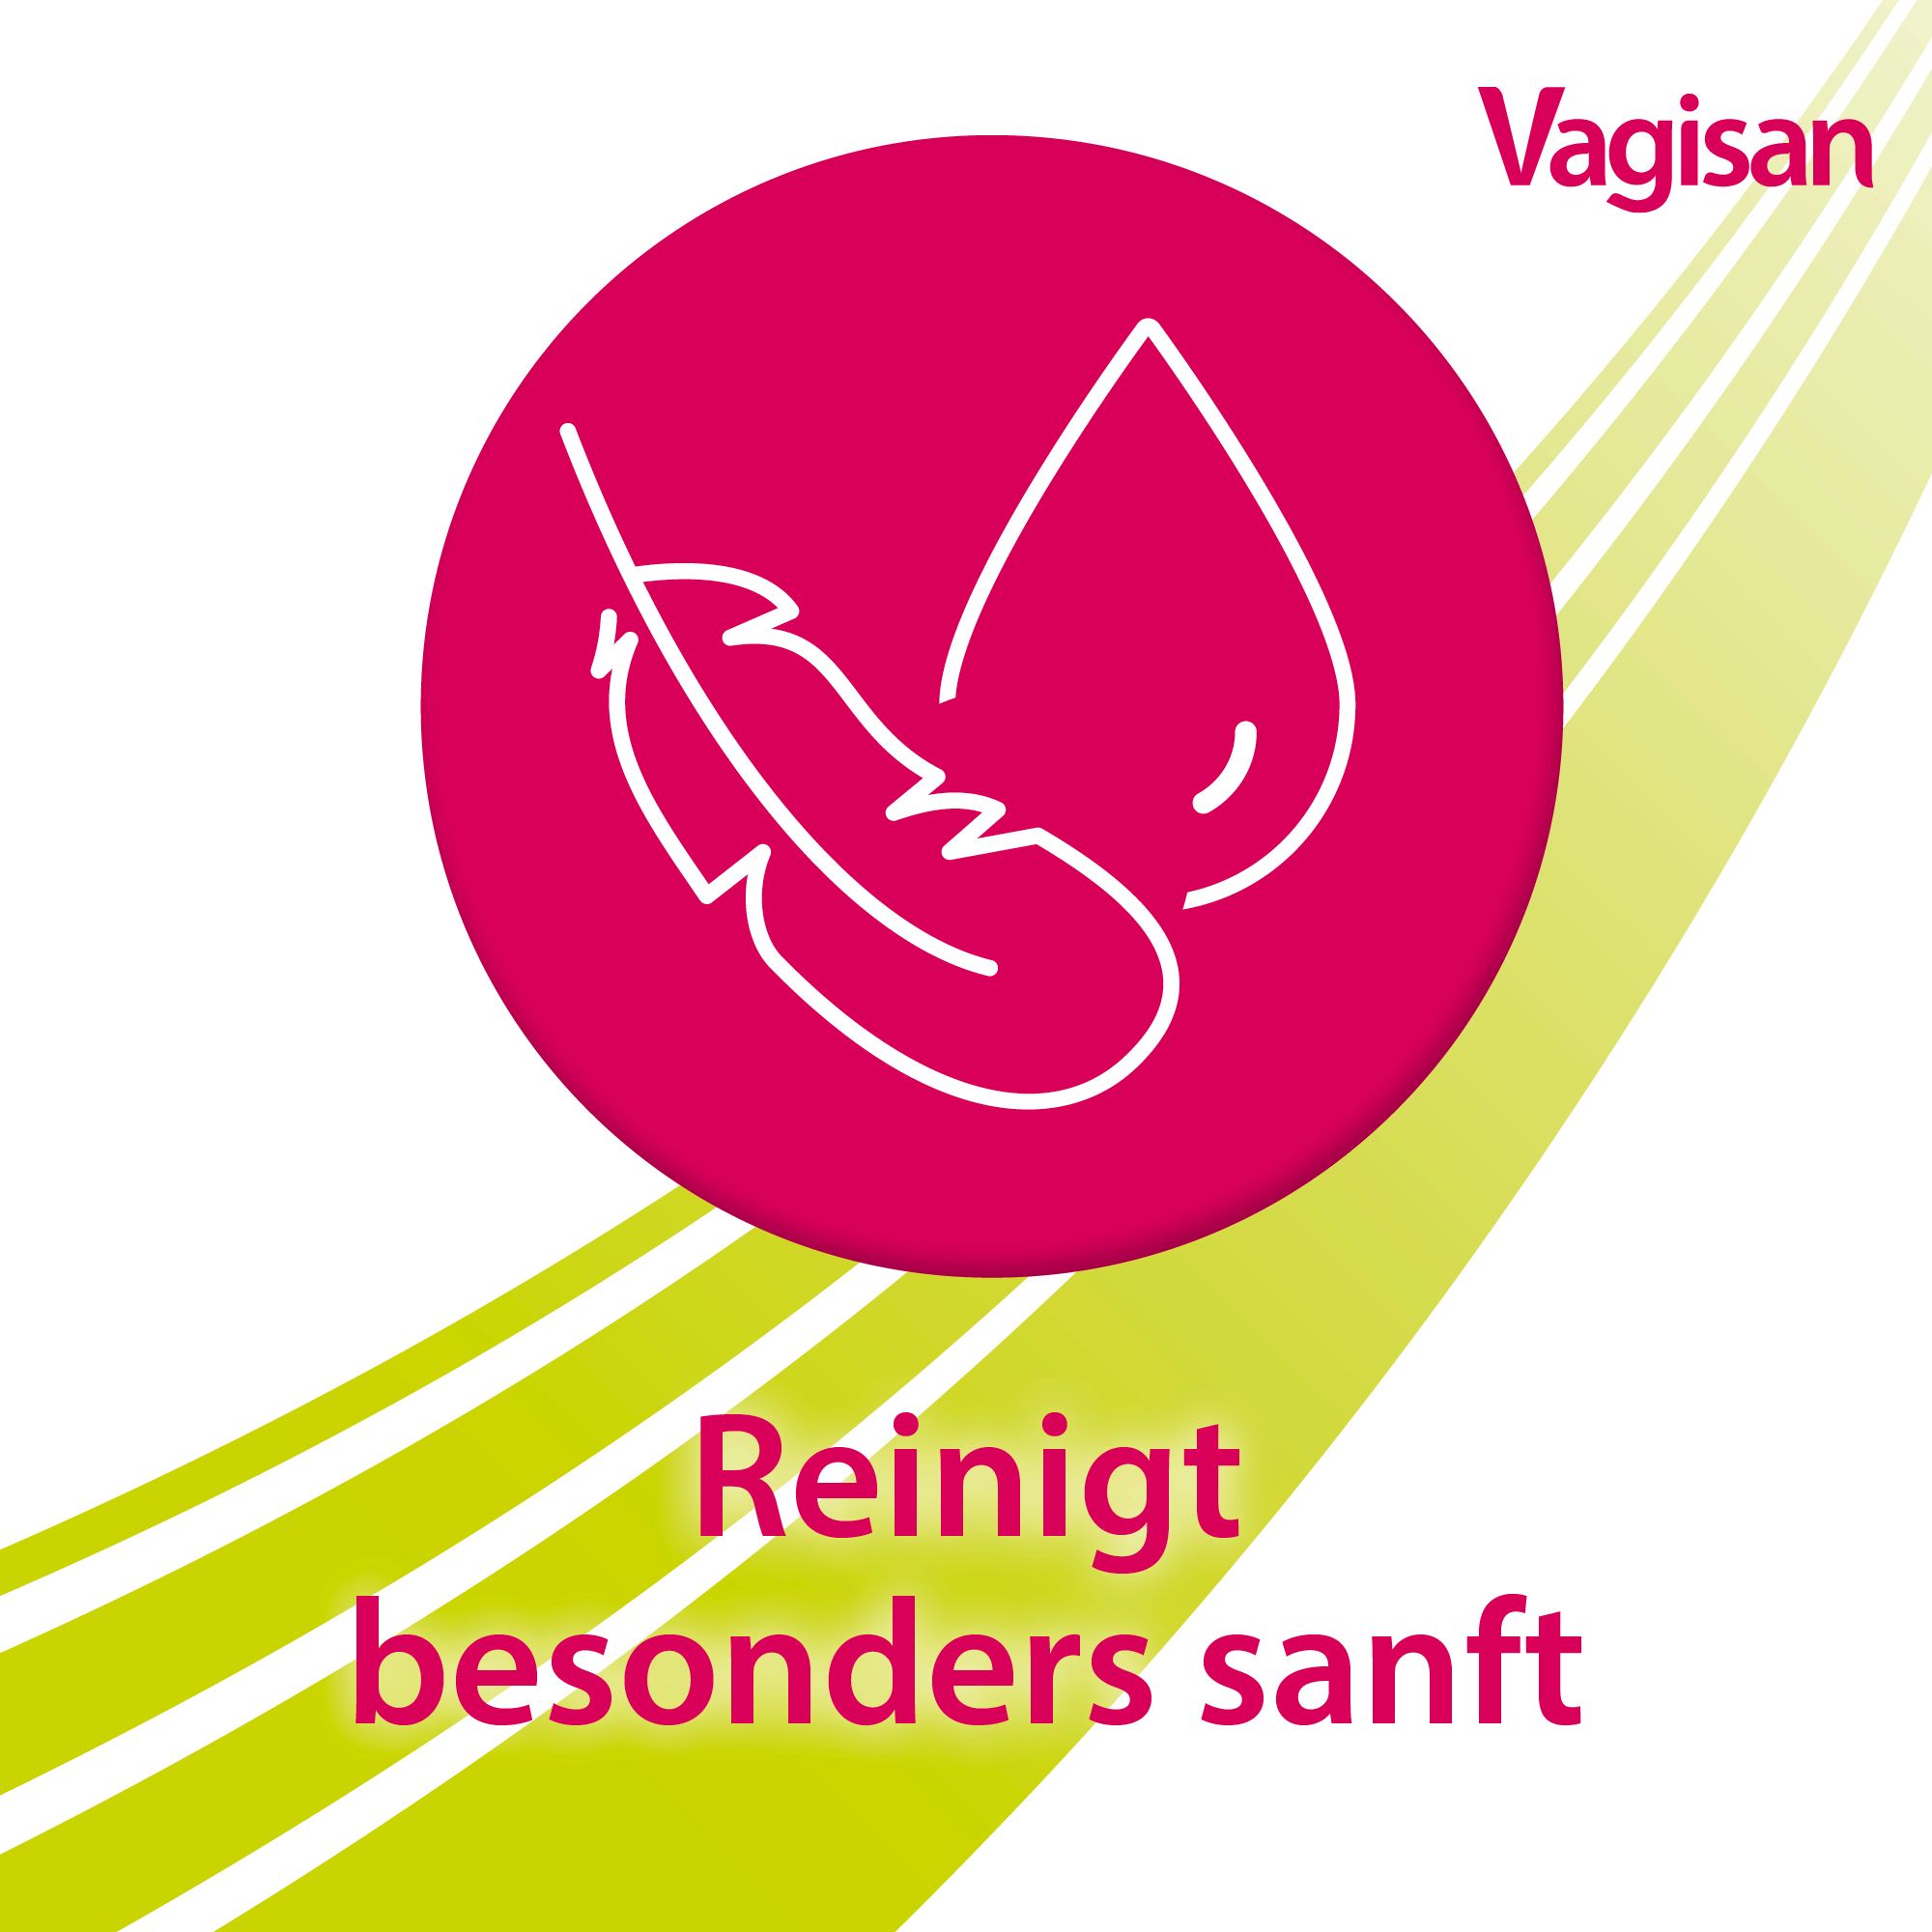 Vagisan Intimwaschlotion: Intimpflege für eine sanfte Reinigung und zur Vorbeugung von Infektionen